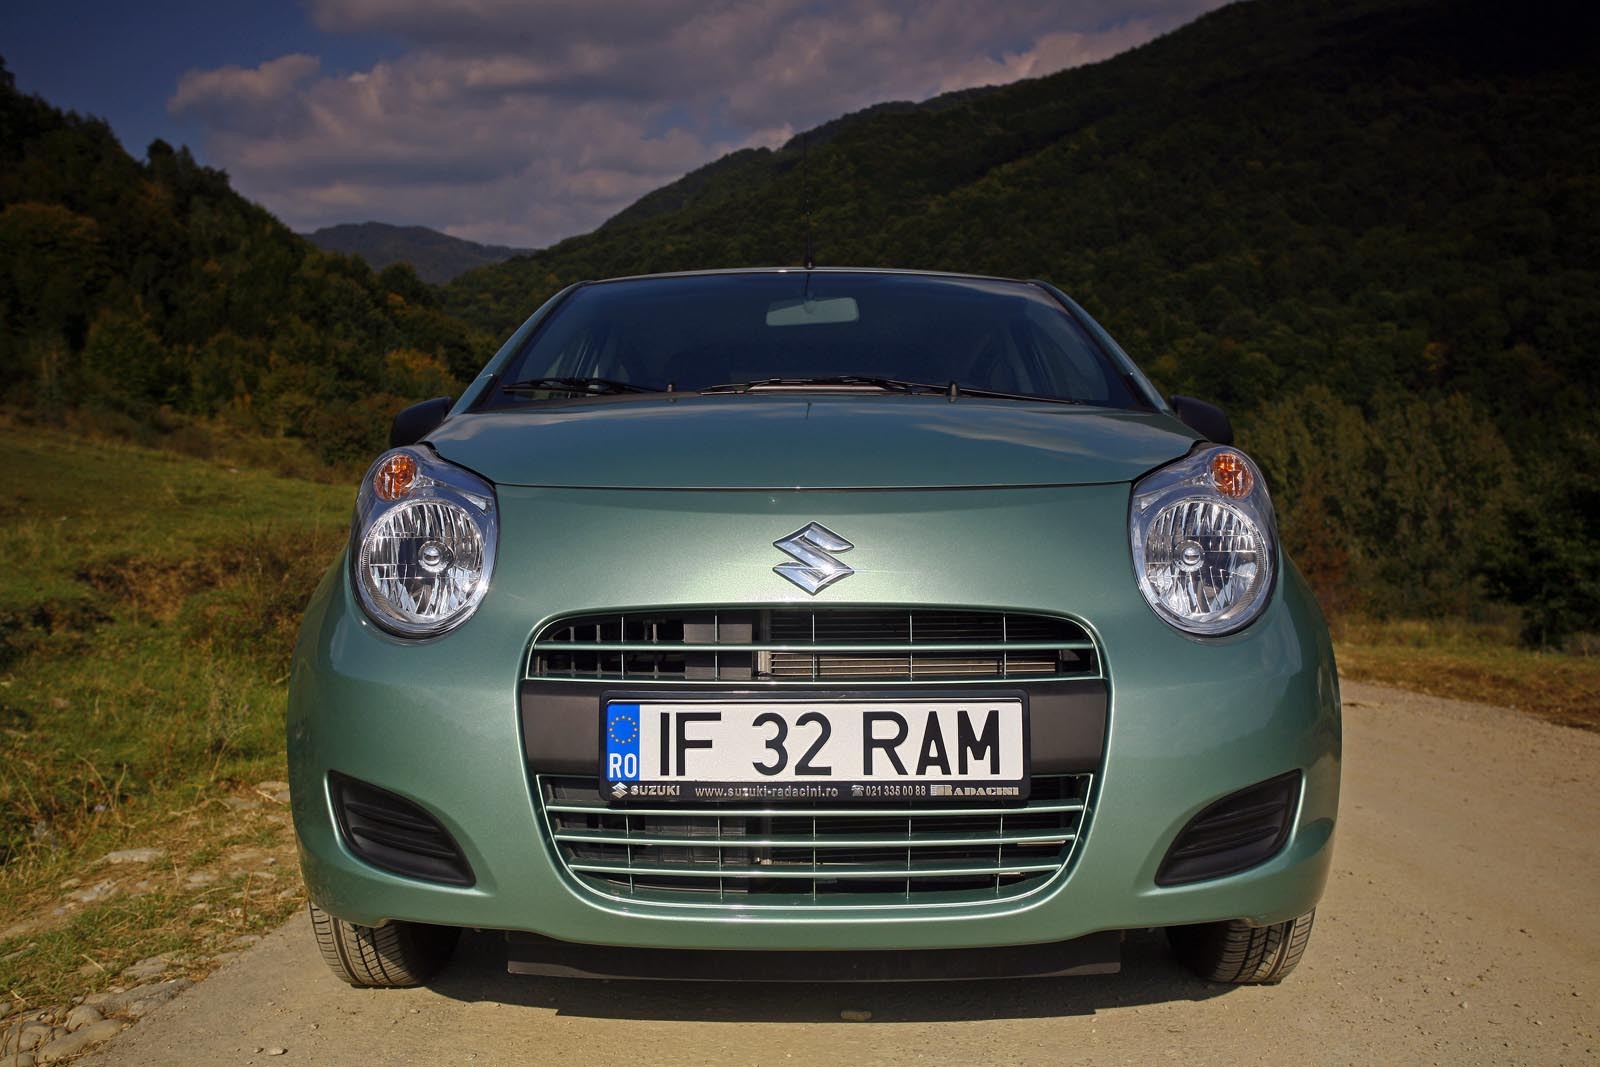 Suzuki Alto este vandut in Romania in echiparea GLX, pentru un pret de 8.650 euro